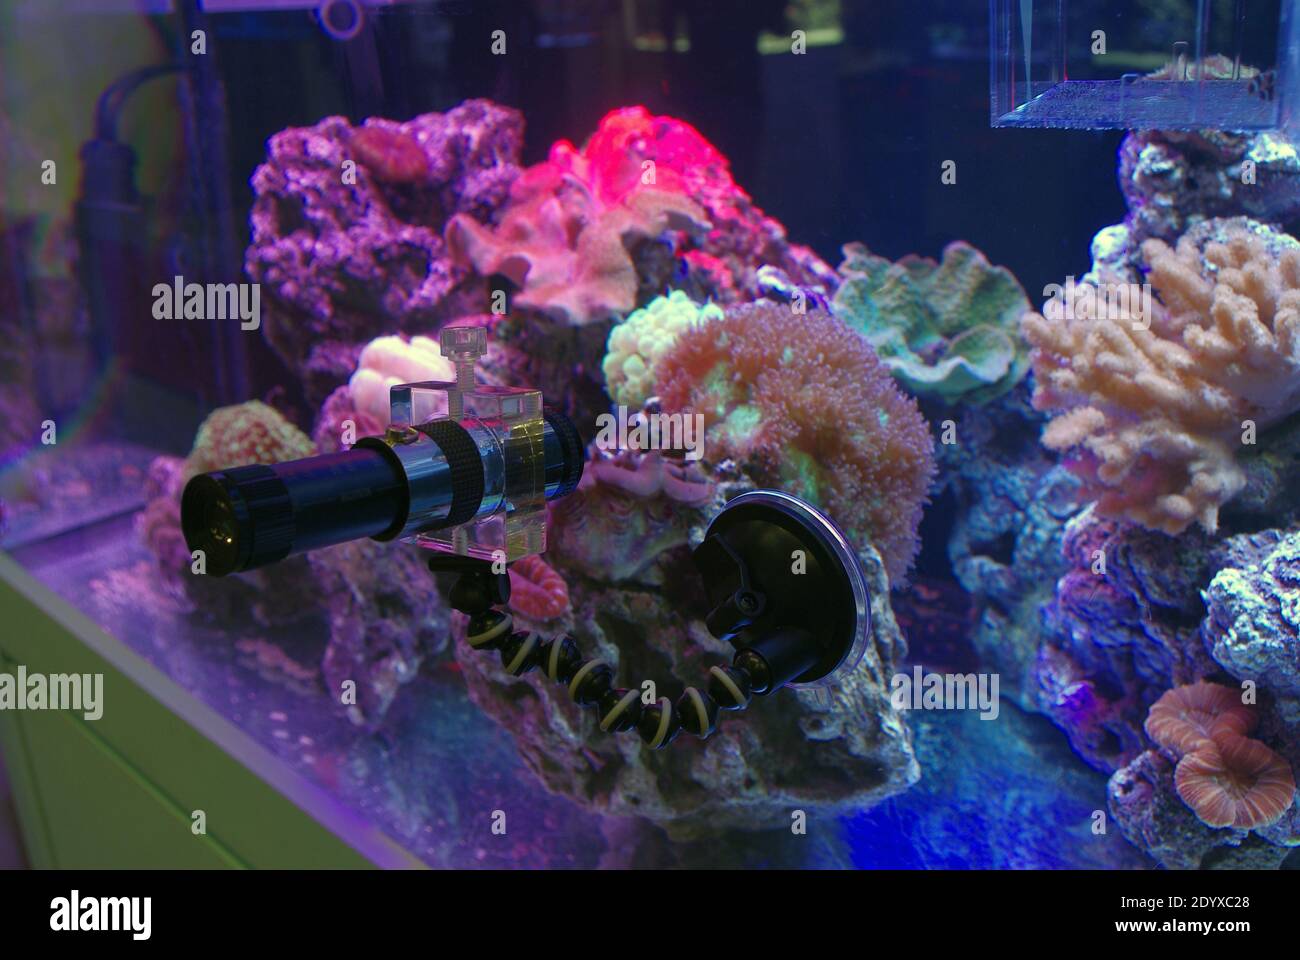 Apparecchiature per microscopio per osservare micro-invertebrati in un acquario della barriera corallina Foto Stock